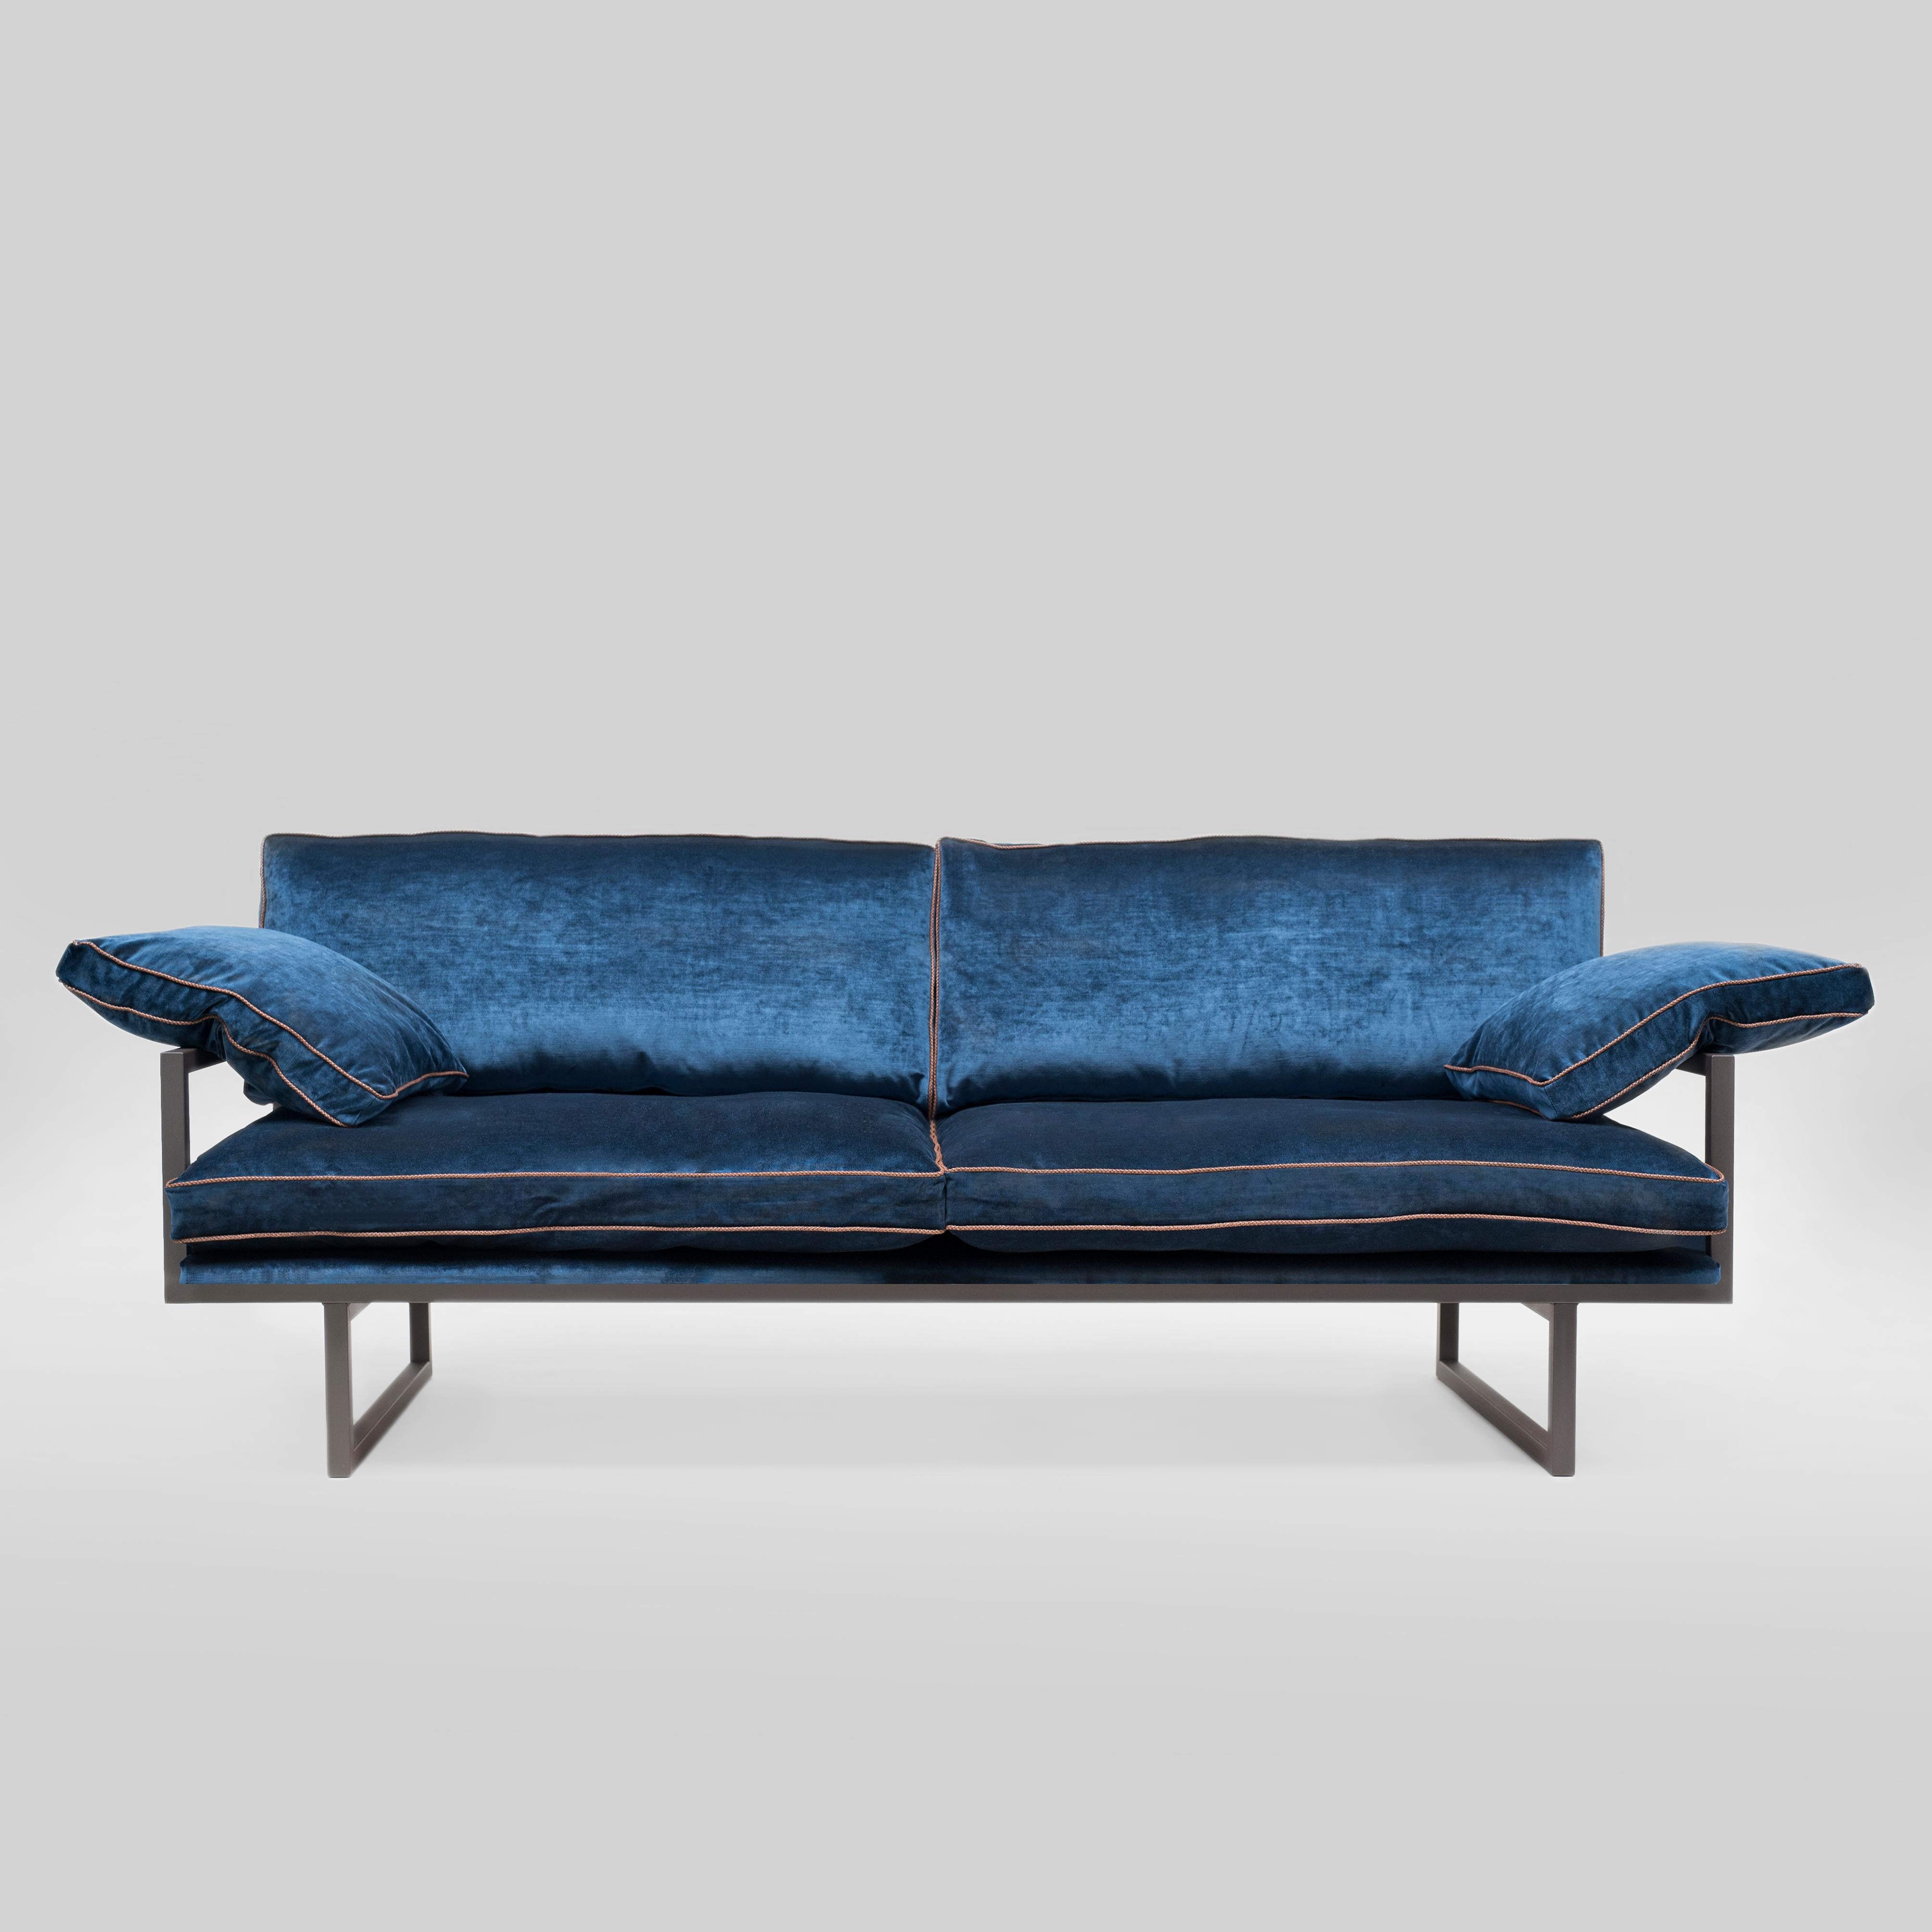 Contemporary Peter Ghyczy Sofa Urban Brad 'GP01' Ristretto/ Royal Blue Fabric